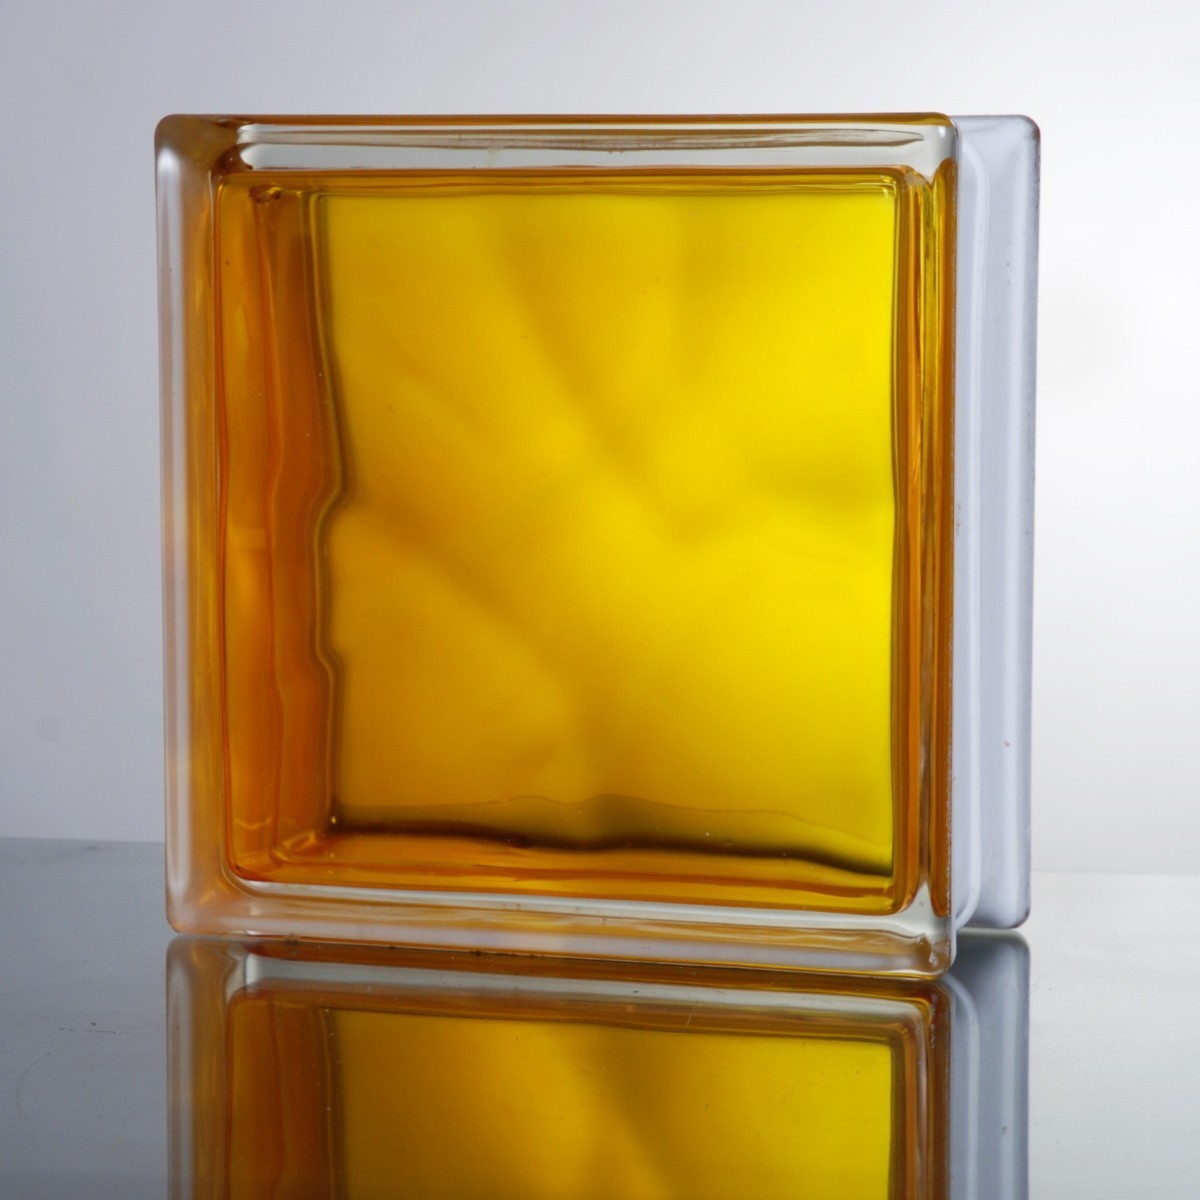 6個セット 送料無料 ガラスブロック 世界で有名なブランド品 厚み80mmインカラー イエロー黄色gb6280-6p